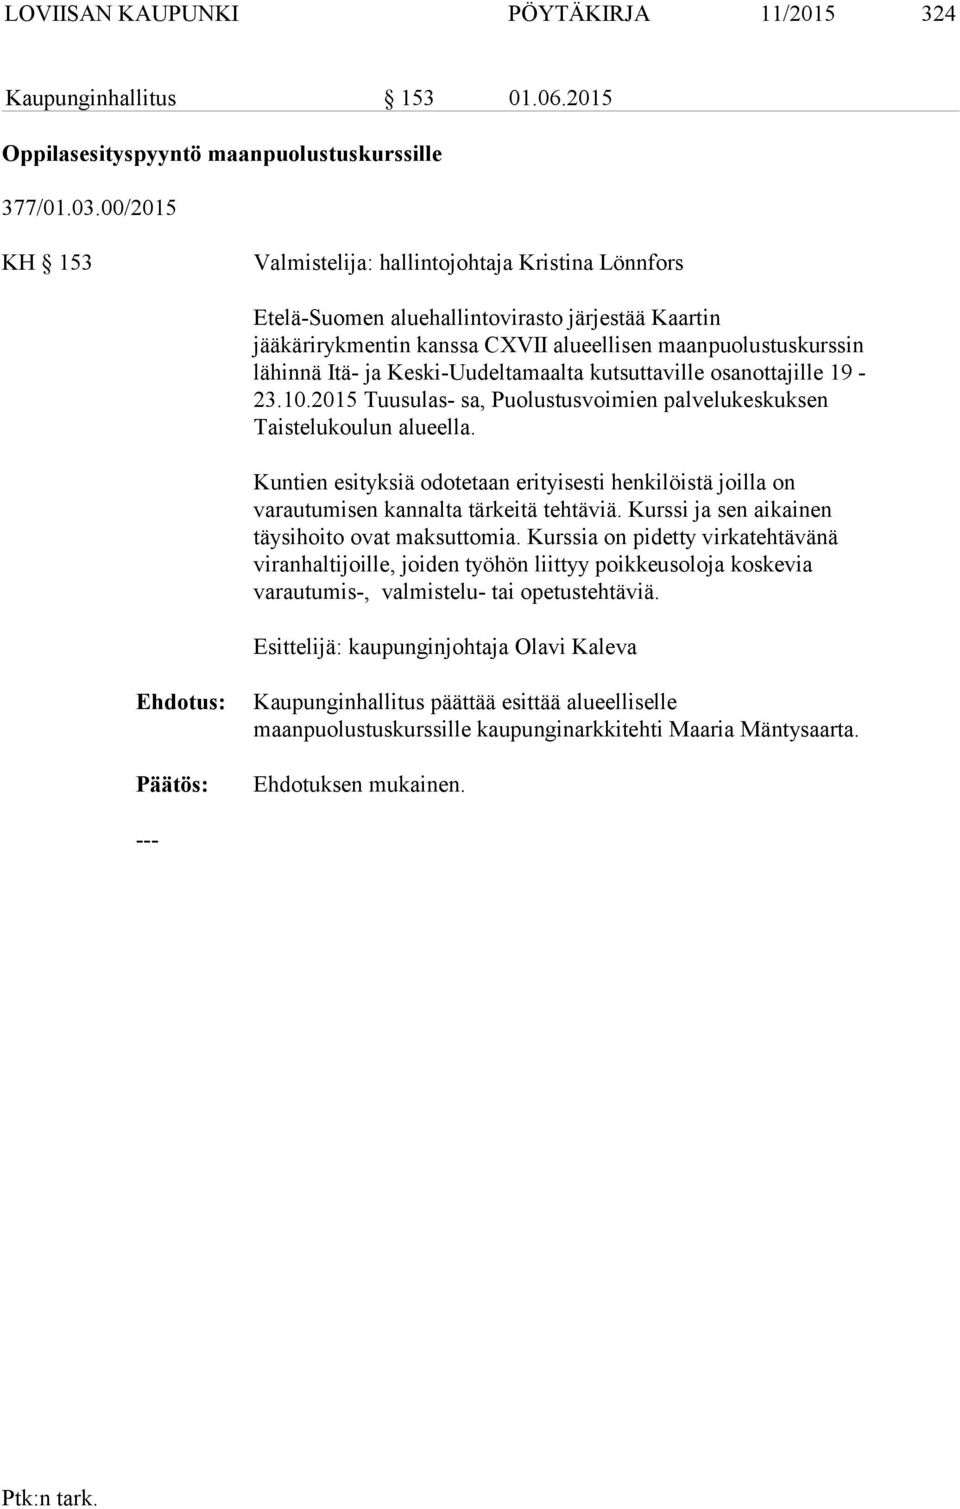 Keski-Uudeltamaalta kutsuttaville osanottajille 19-23.10.2015 Tuusulas- sa, Puolustusvoimien palvelukeskuksen Taistelukoulun alueella.